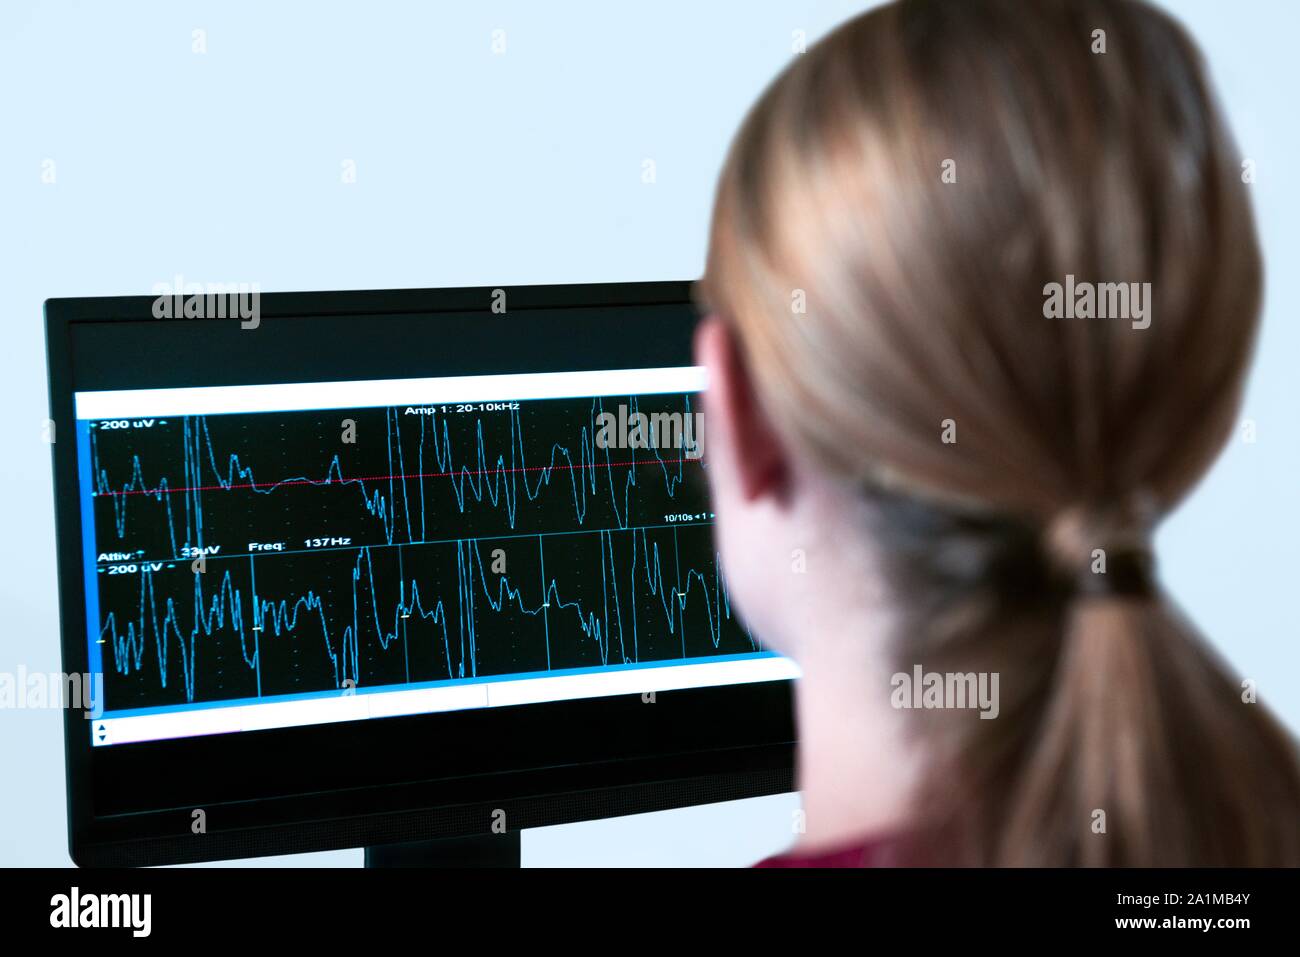 Professionnel de la santé des femmes à l'électromyographie (EMG) de résultats à l'écran. Banque D'Images